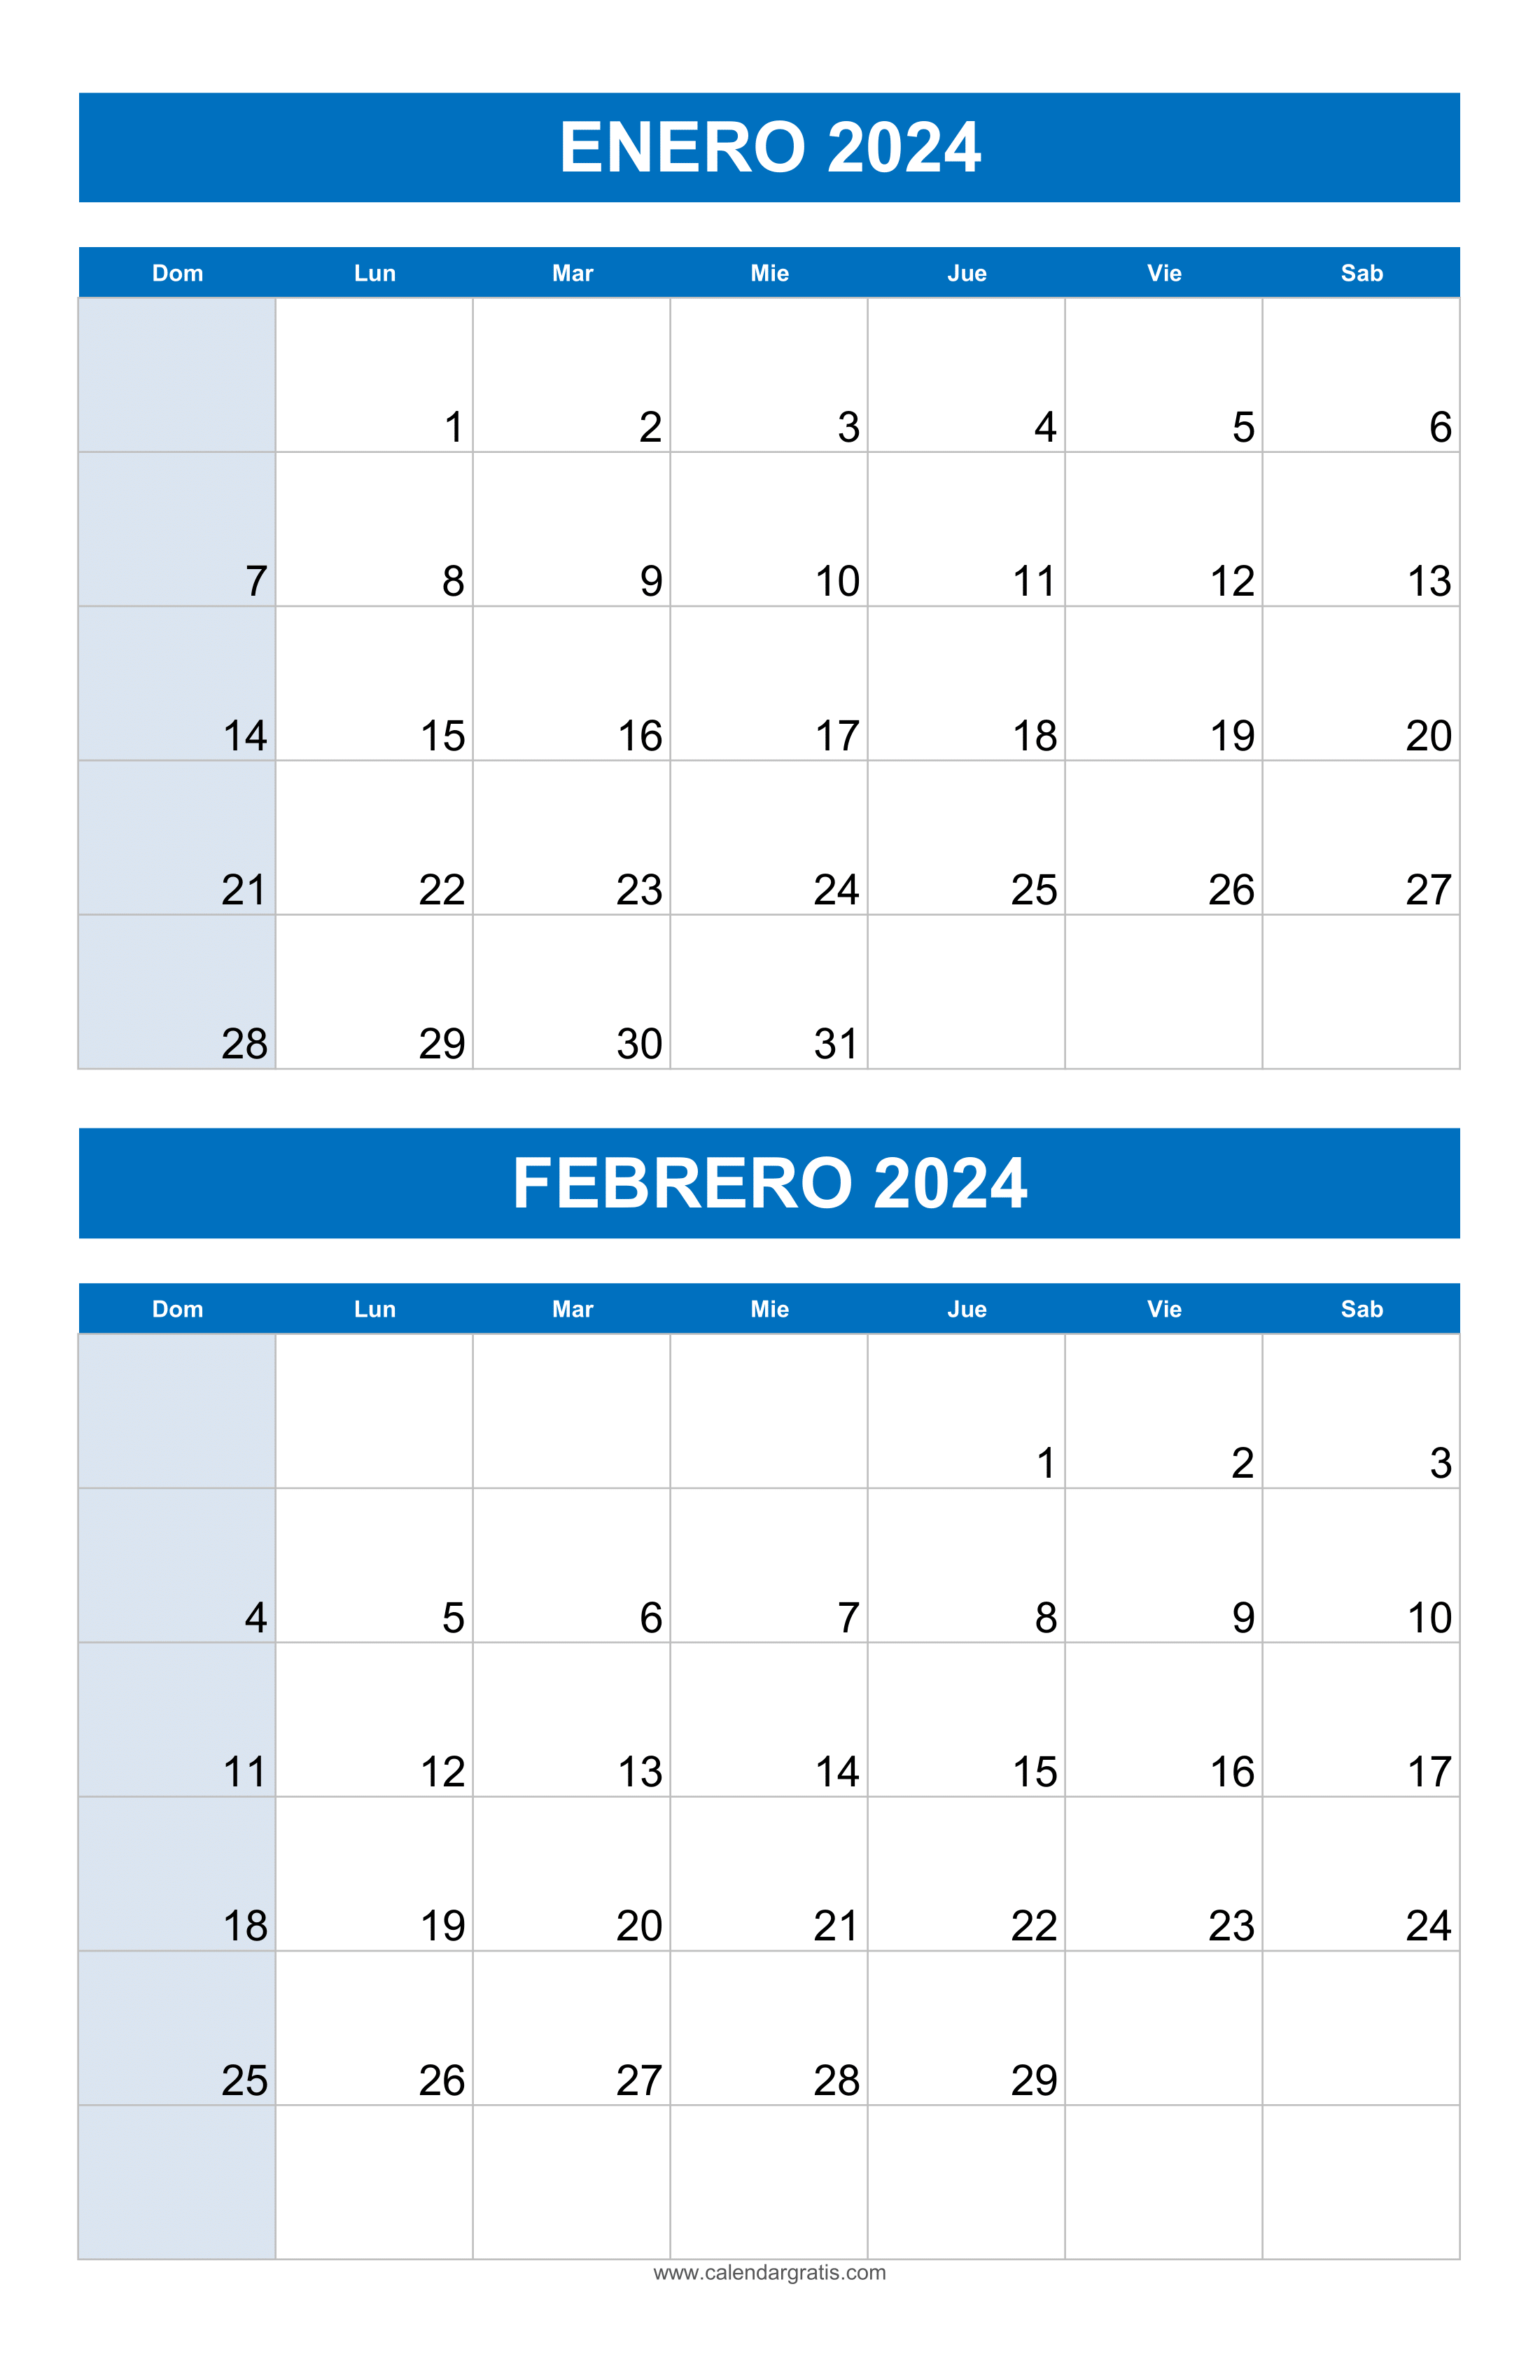 Calendario Enero y Febrero 2024: Planifica tu mes con metas y seguimiento